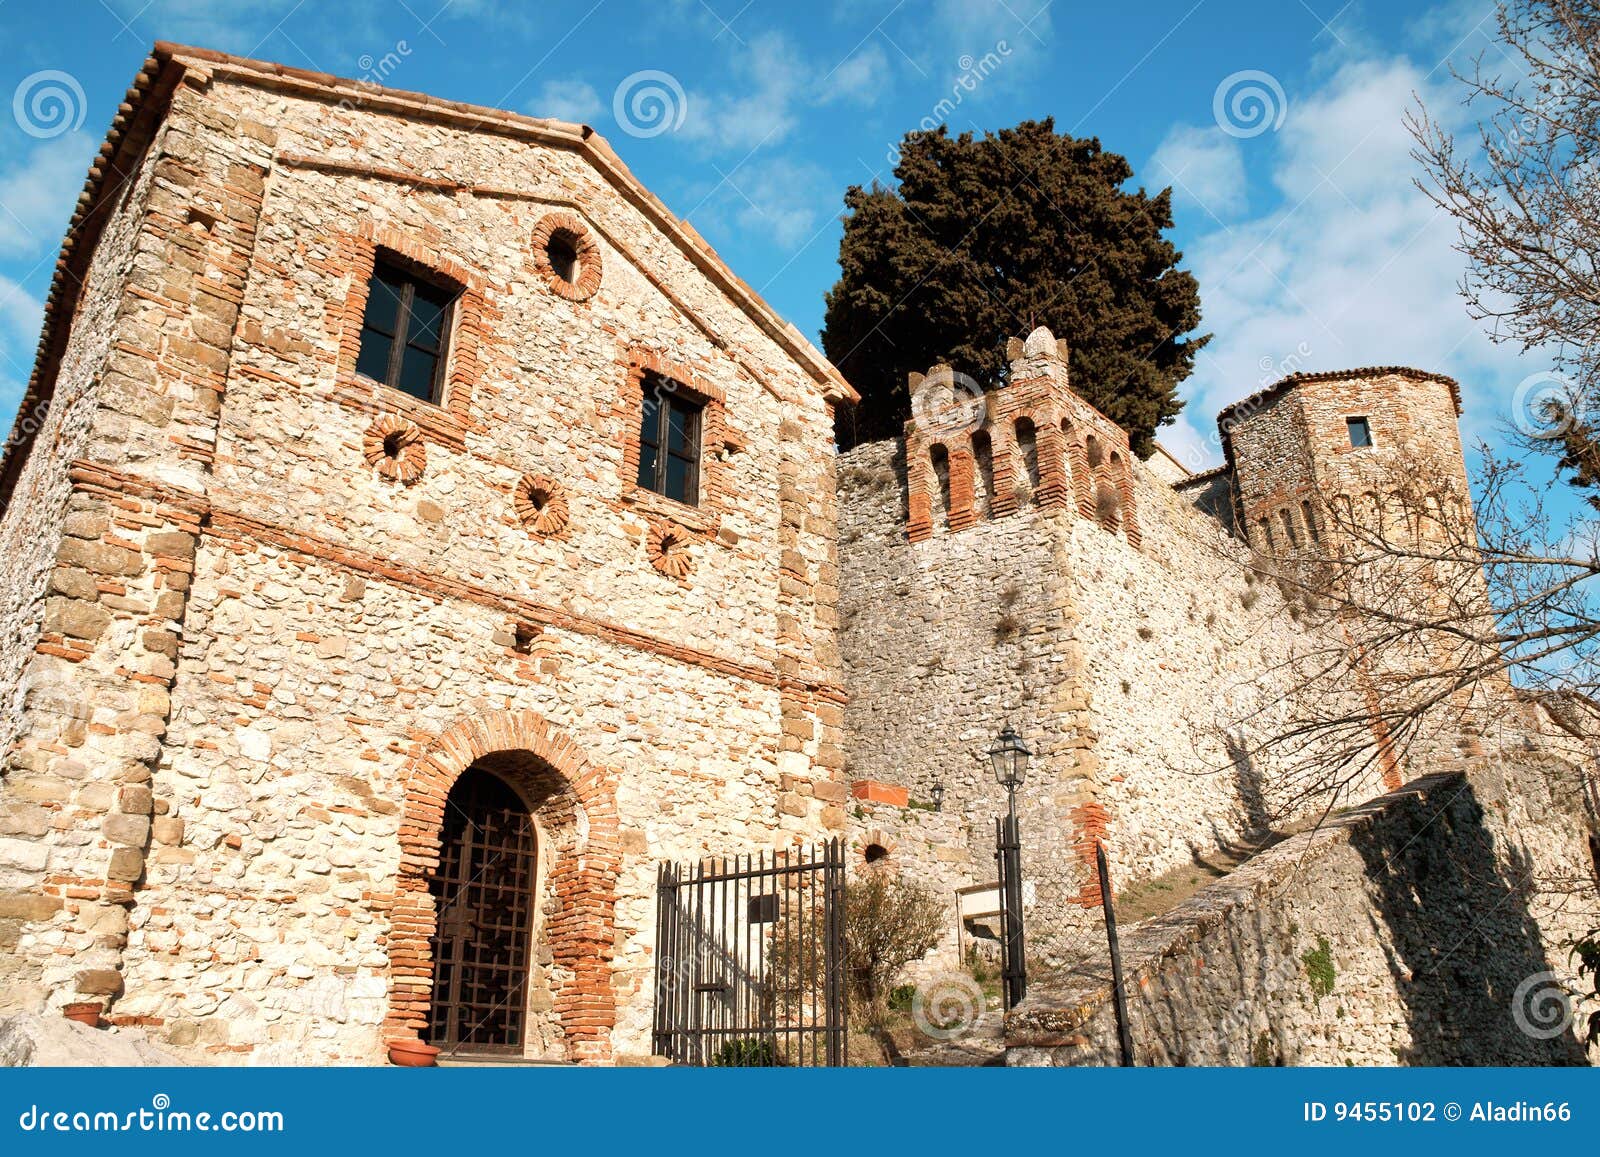 the castle of montebello di torriana